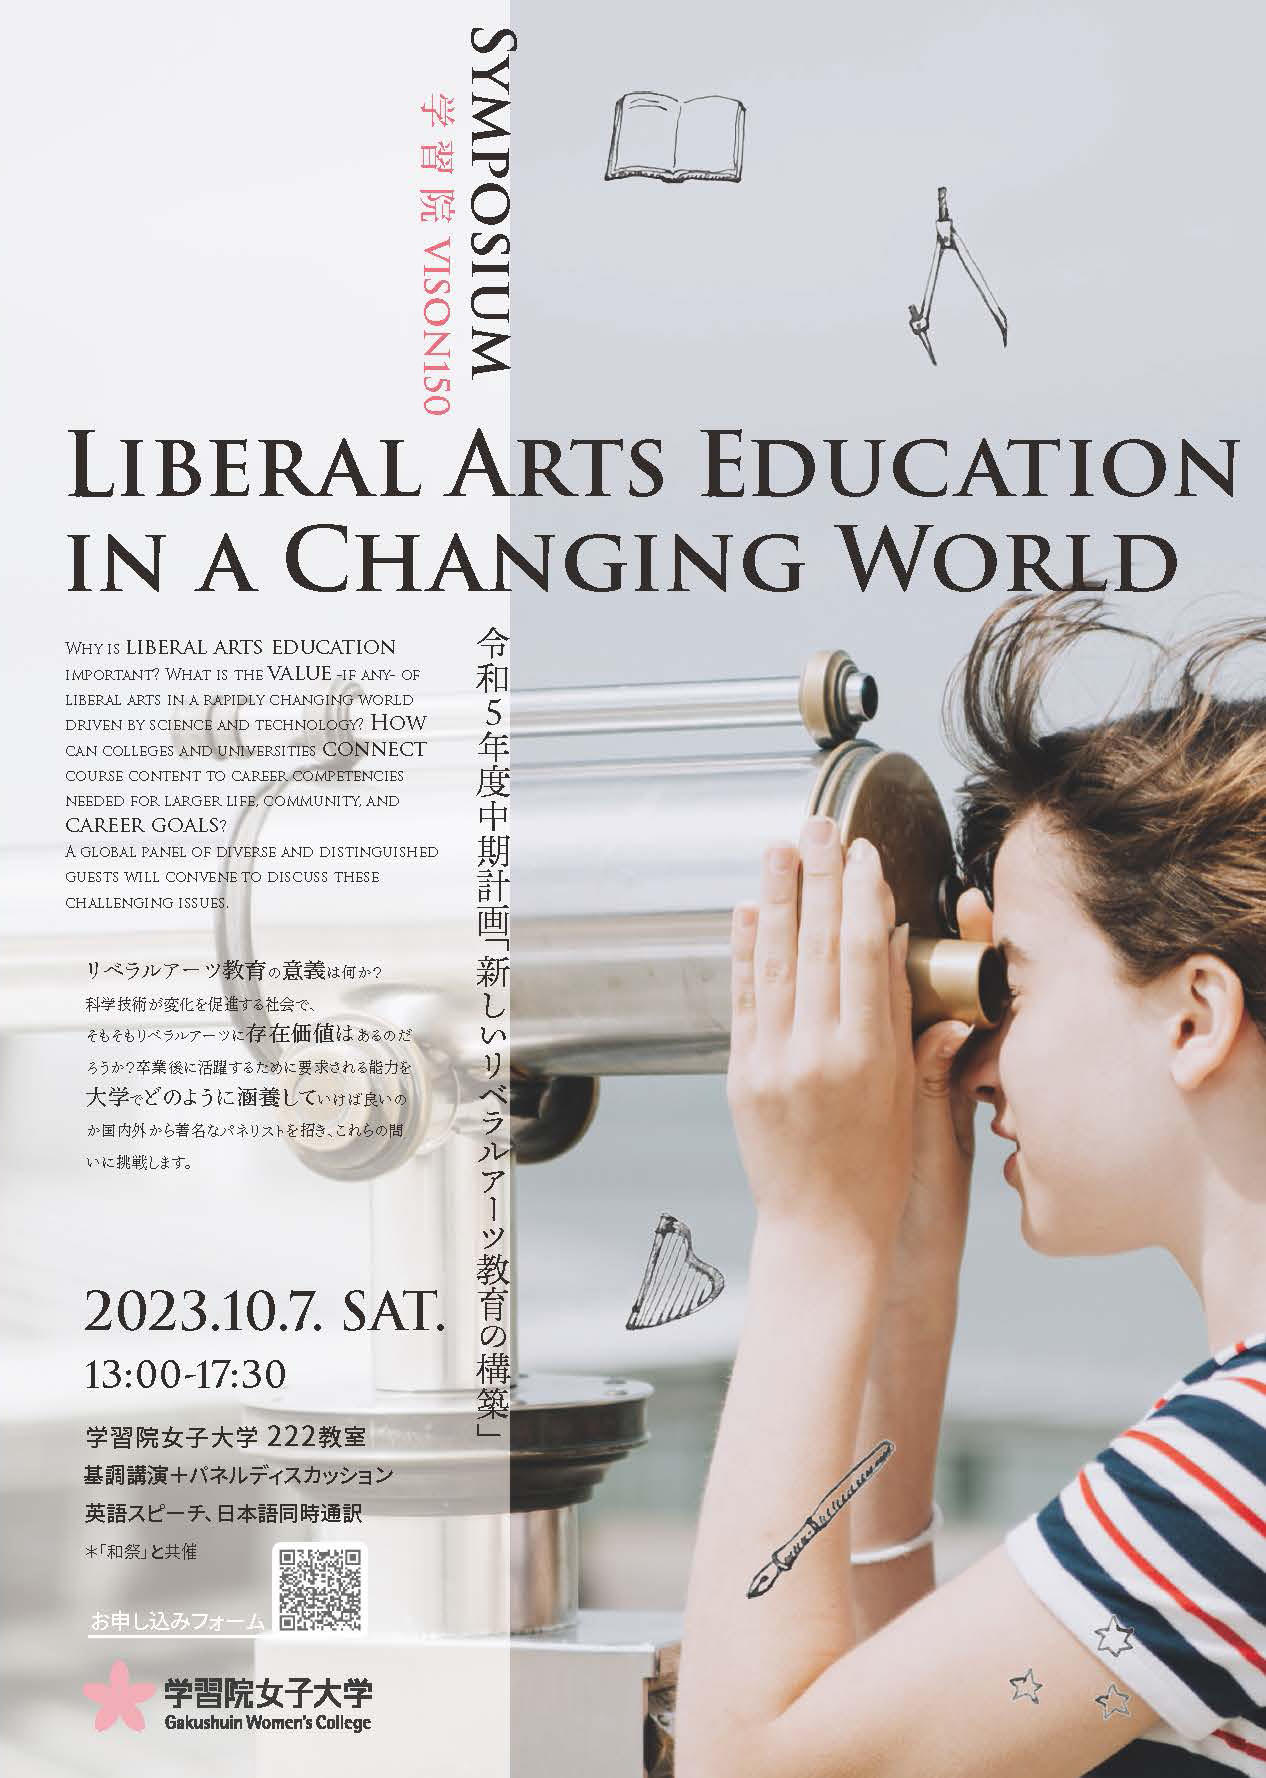 10月7日 国際シンポジウム「Liberal Arts Education In a Changing World」を開催